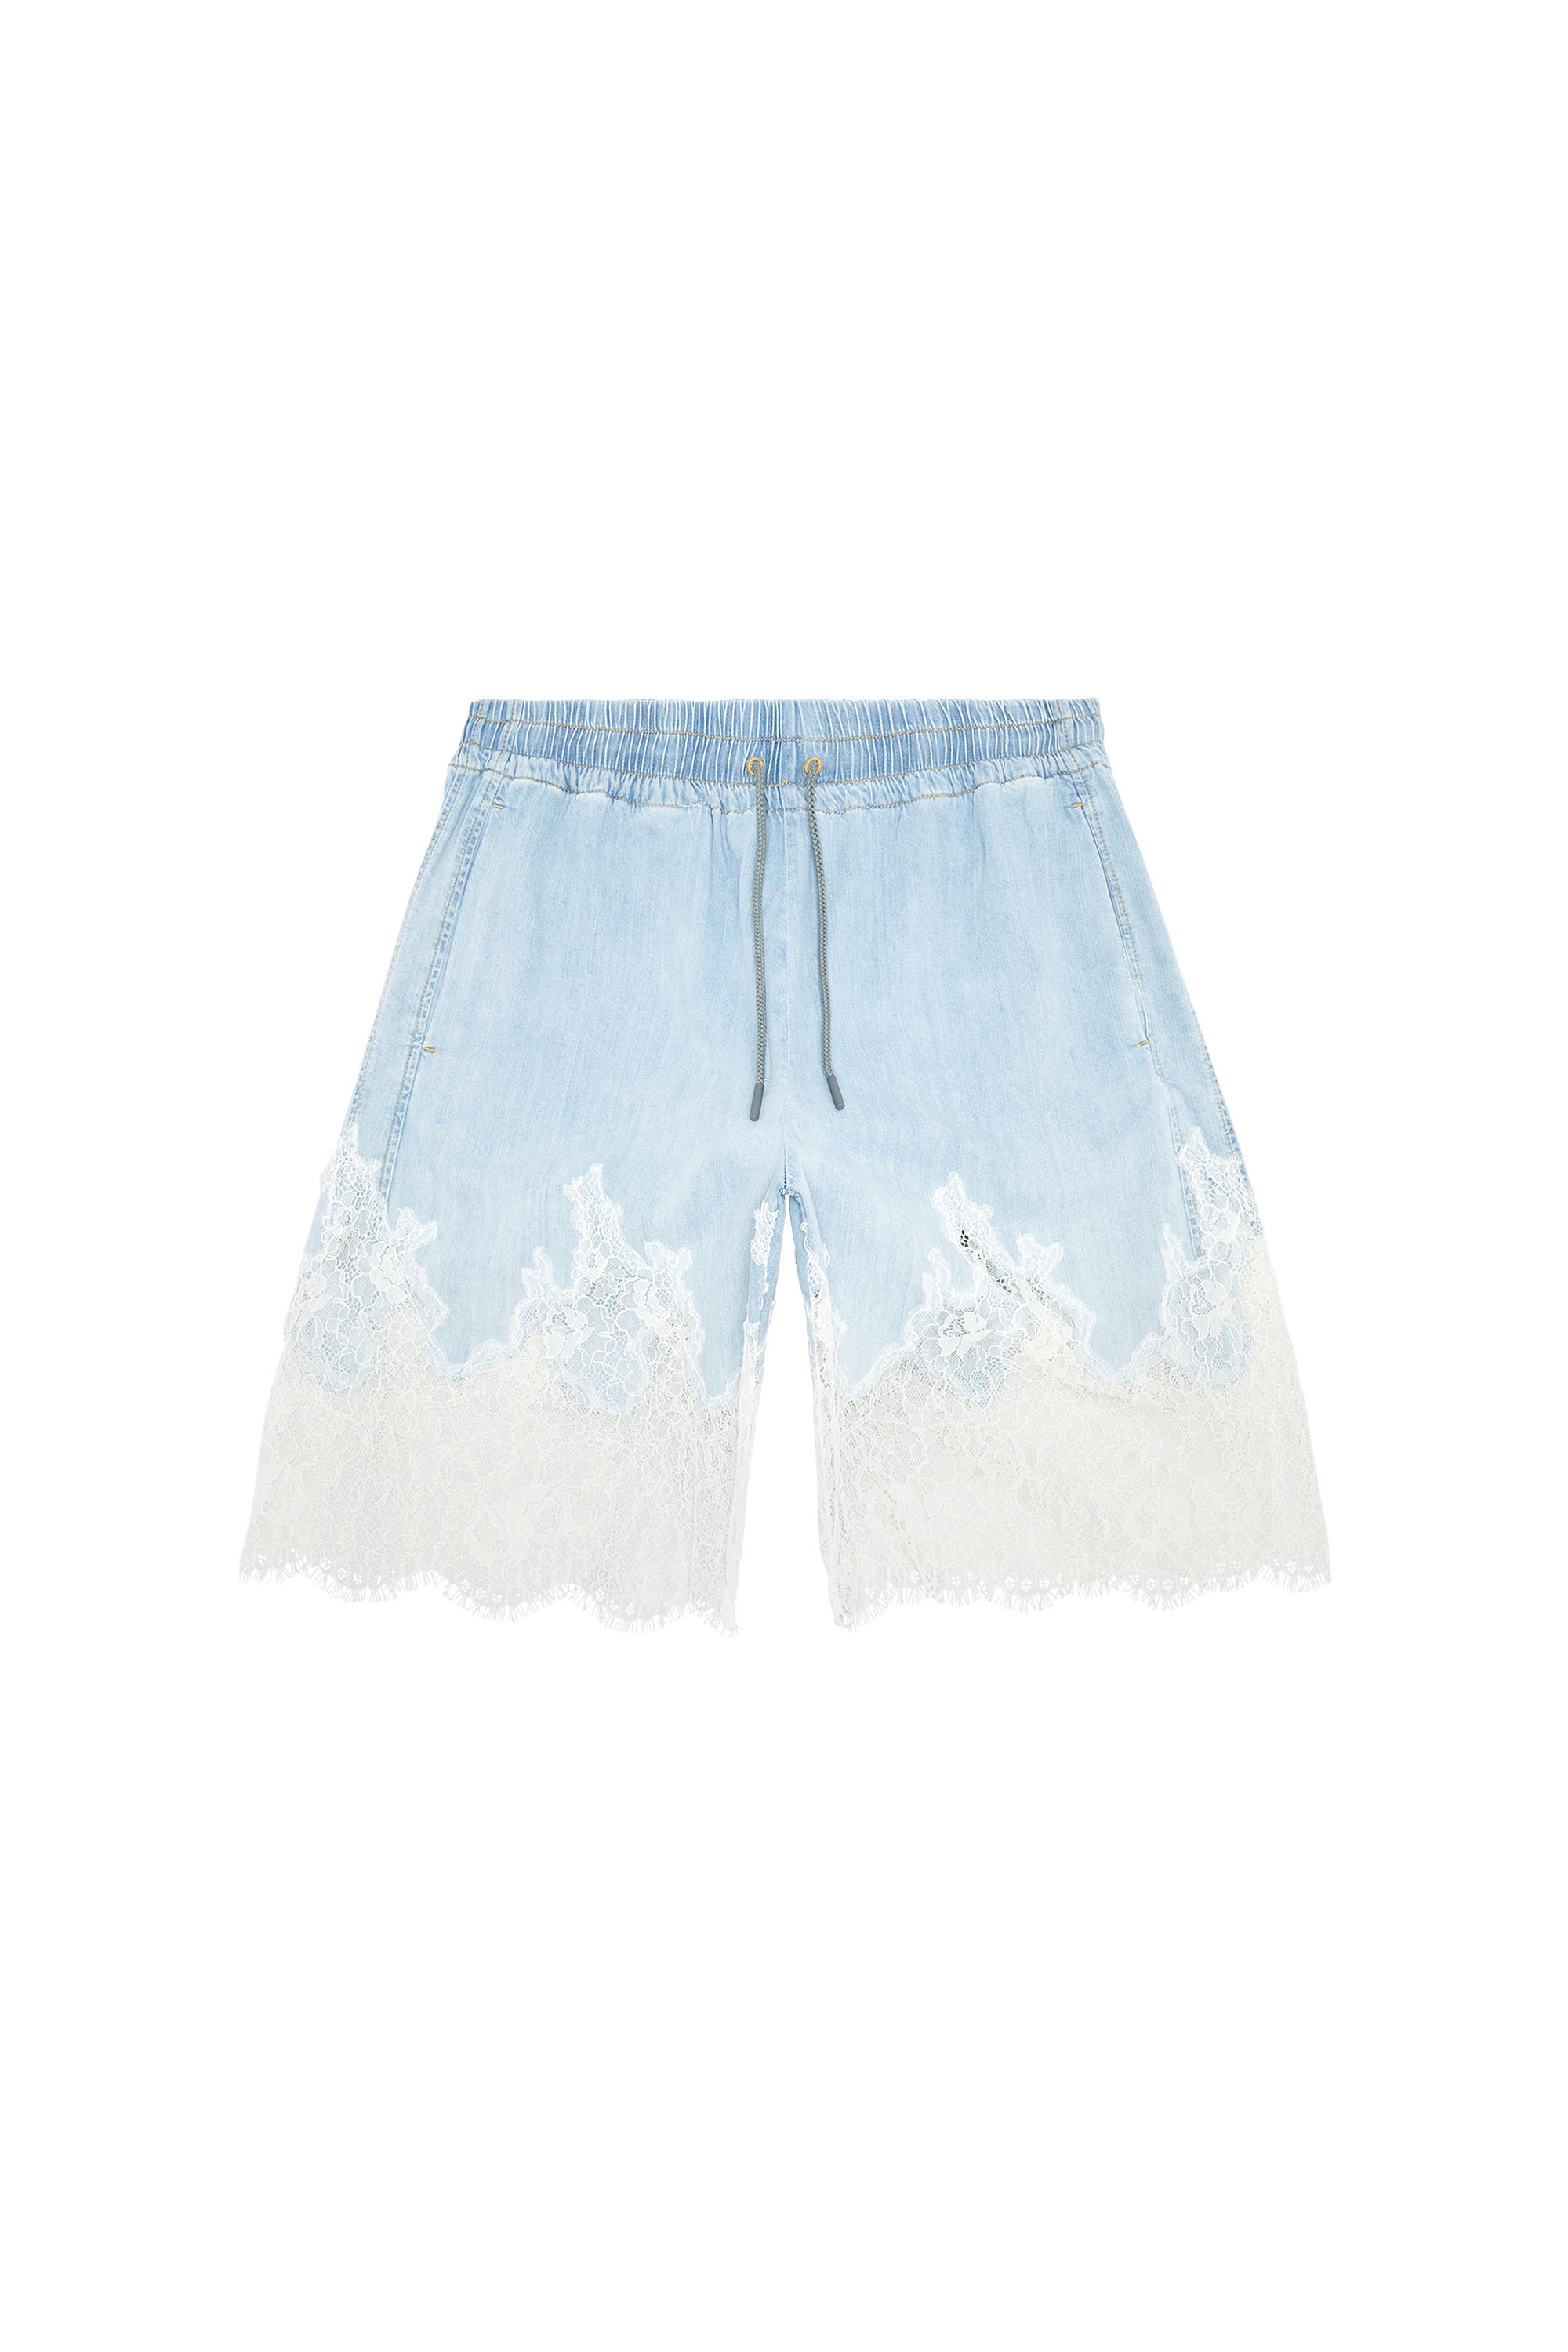 Diesel - DE-MALKIA-S, Woman Bermuda shorts in denim and lace in Blue - Image 5